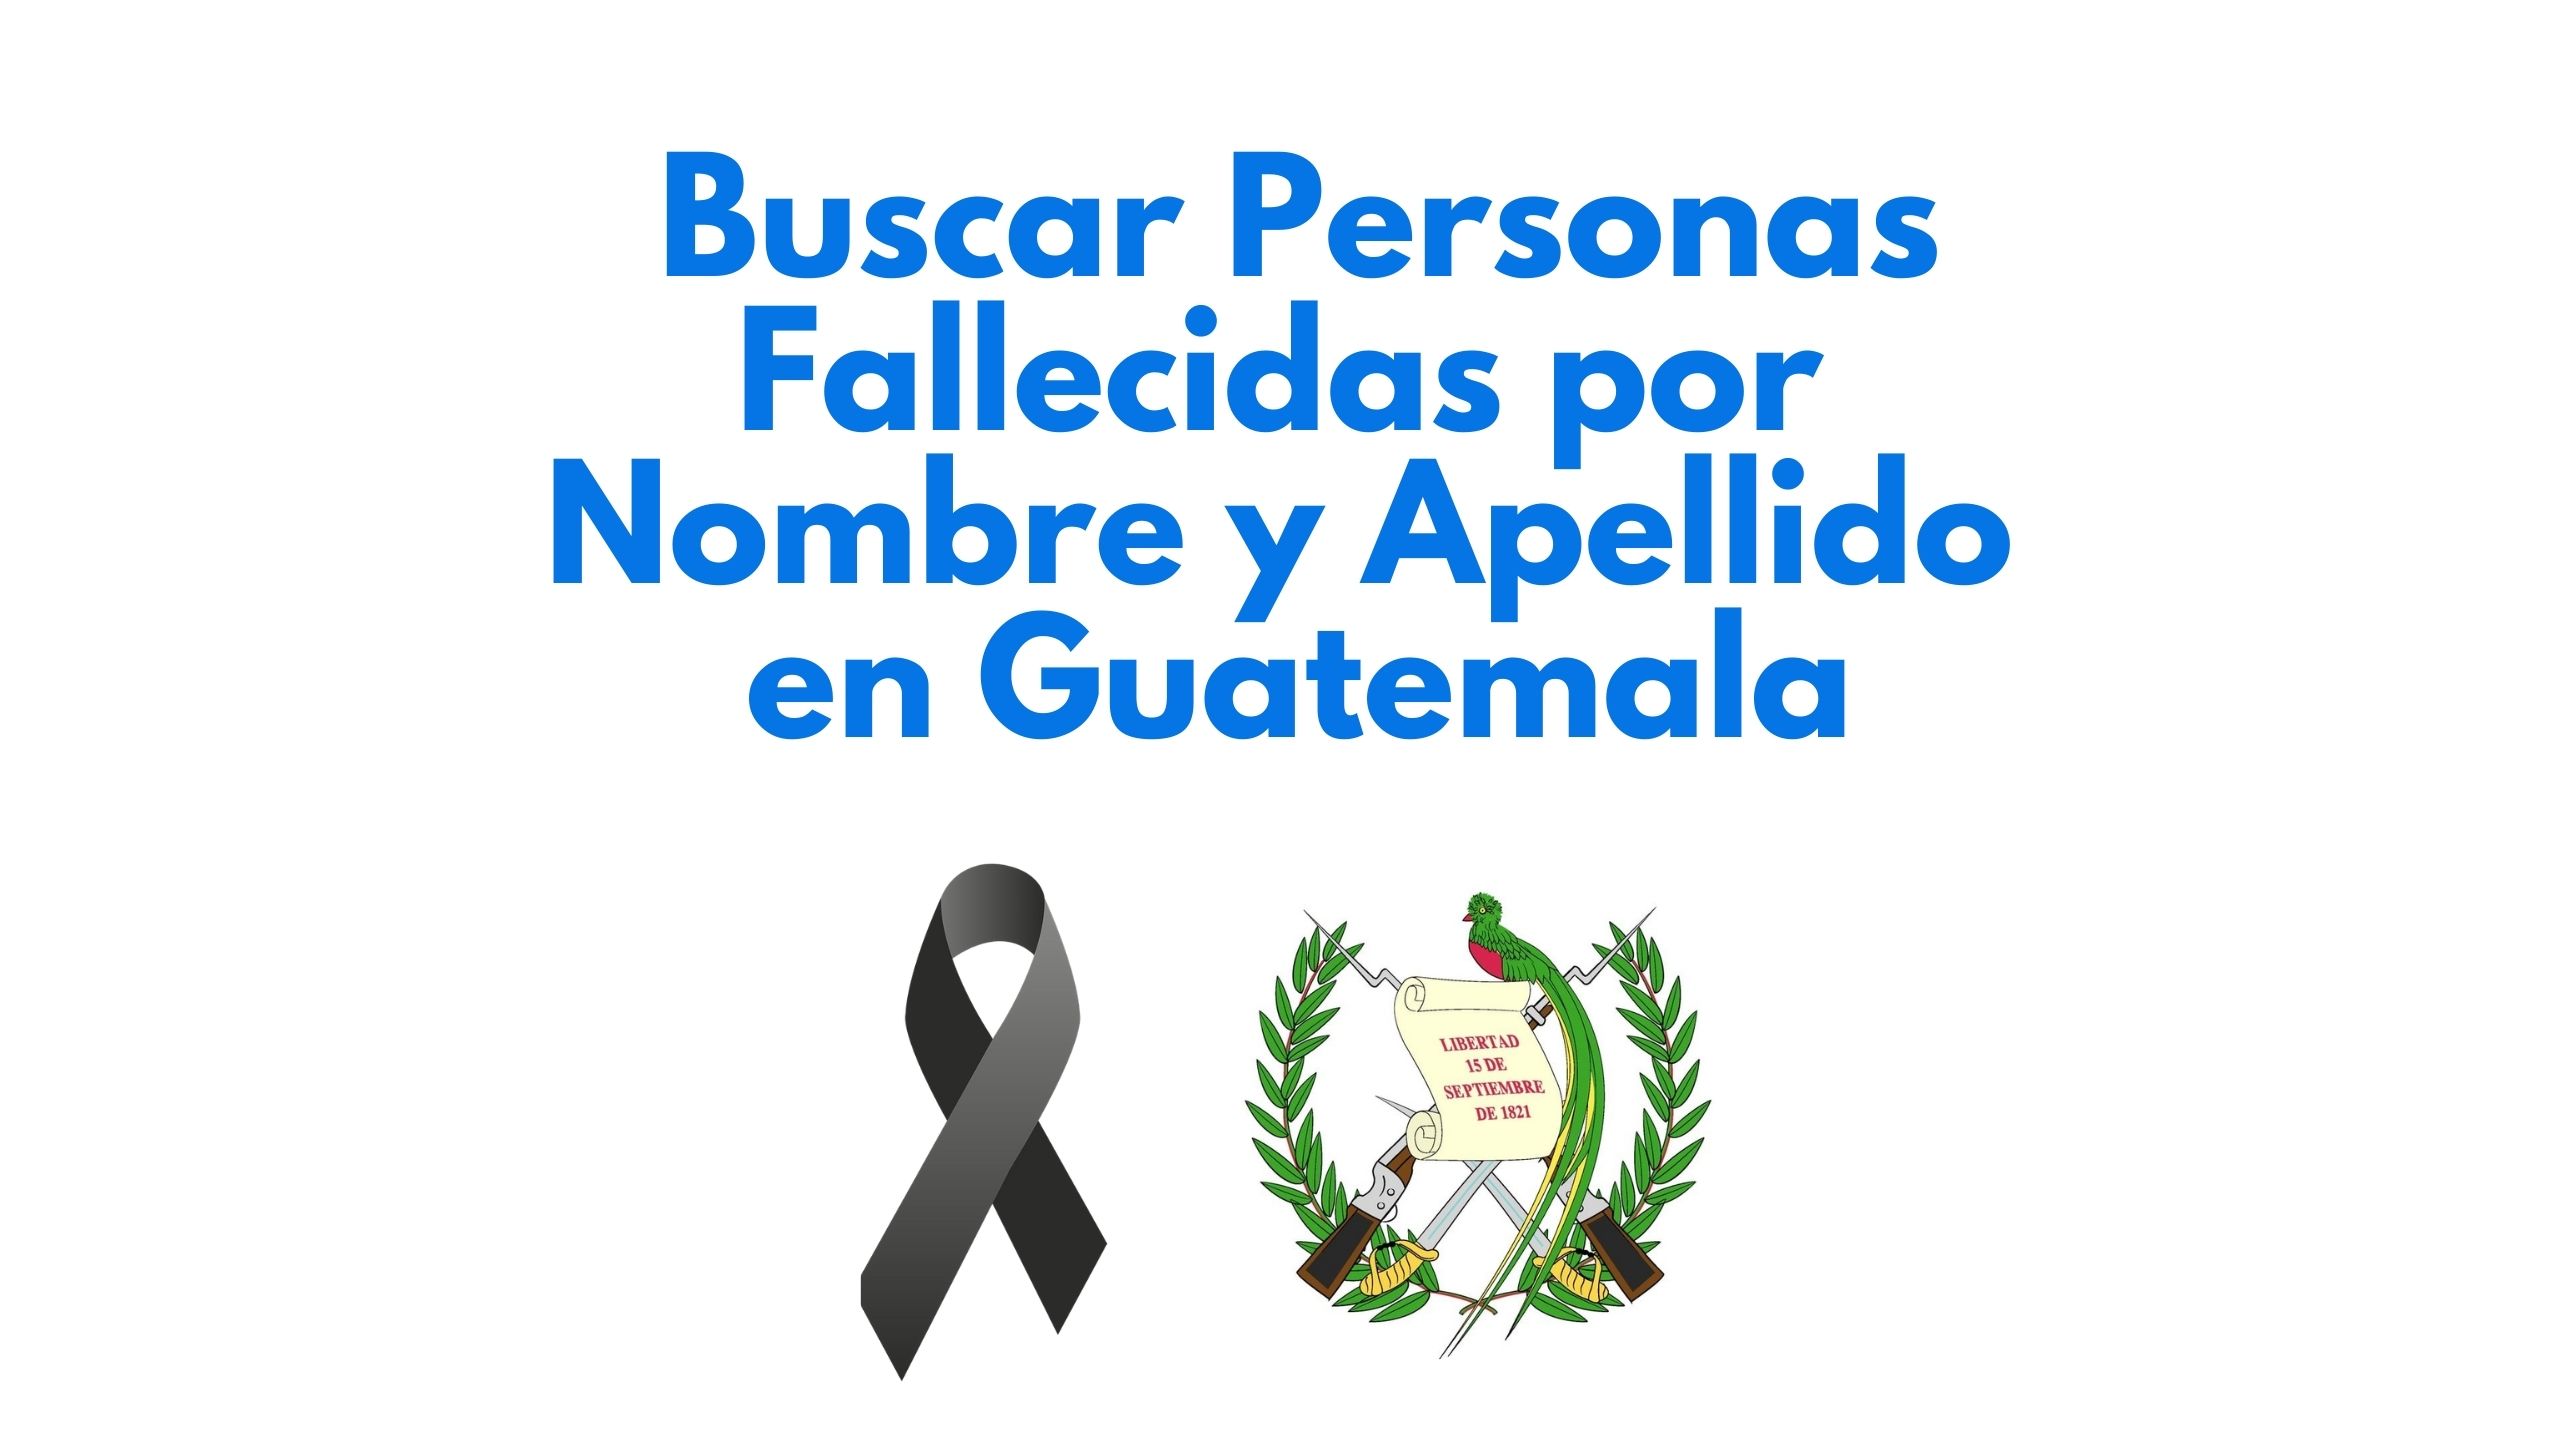 Buscar Personas Fallecidas por Nombre en Guatemala